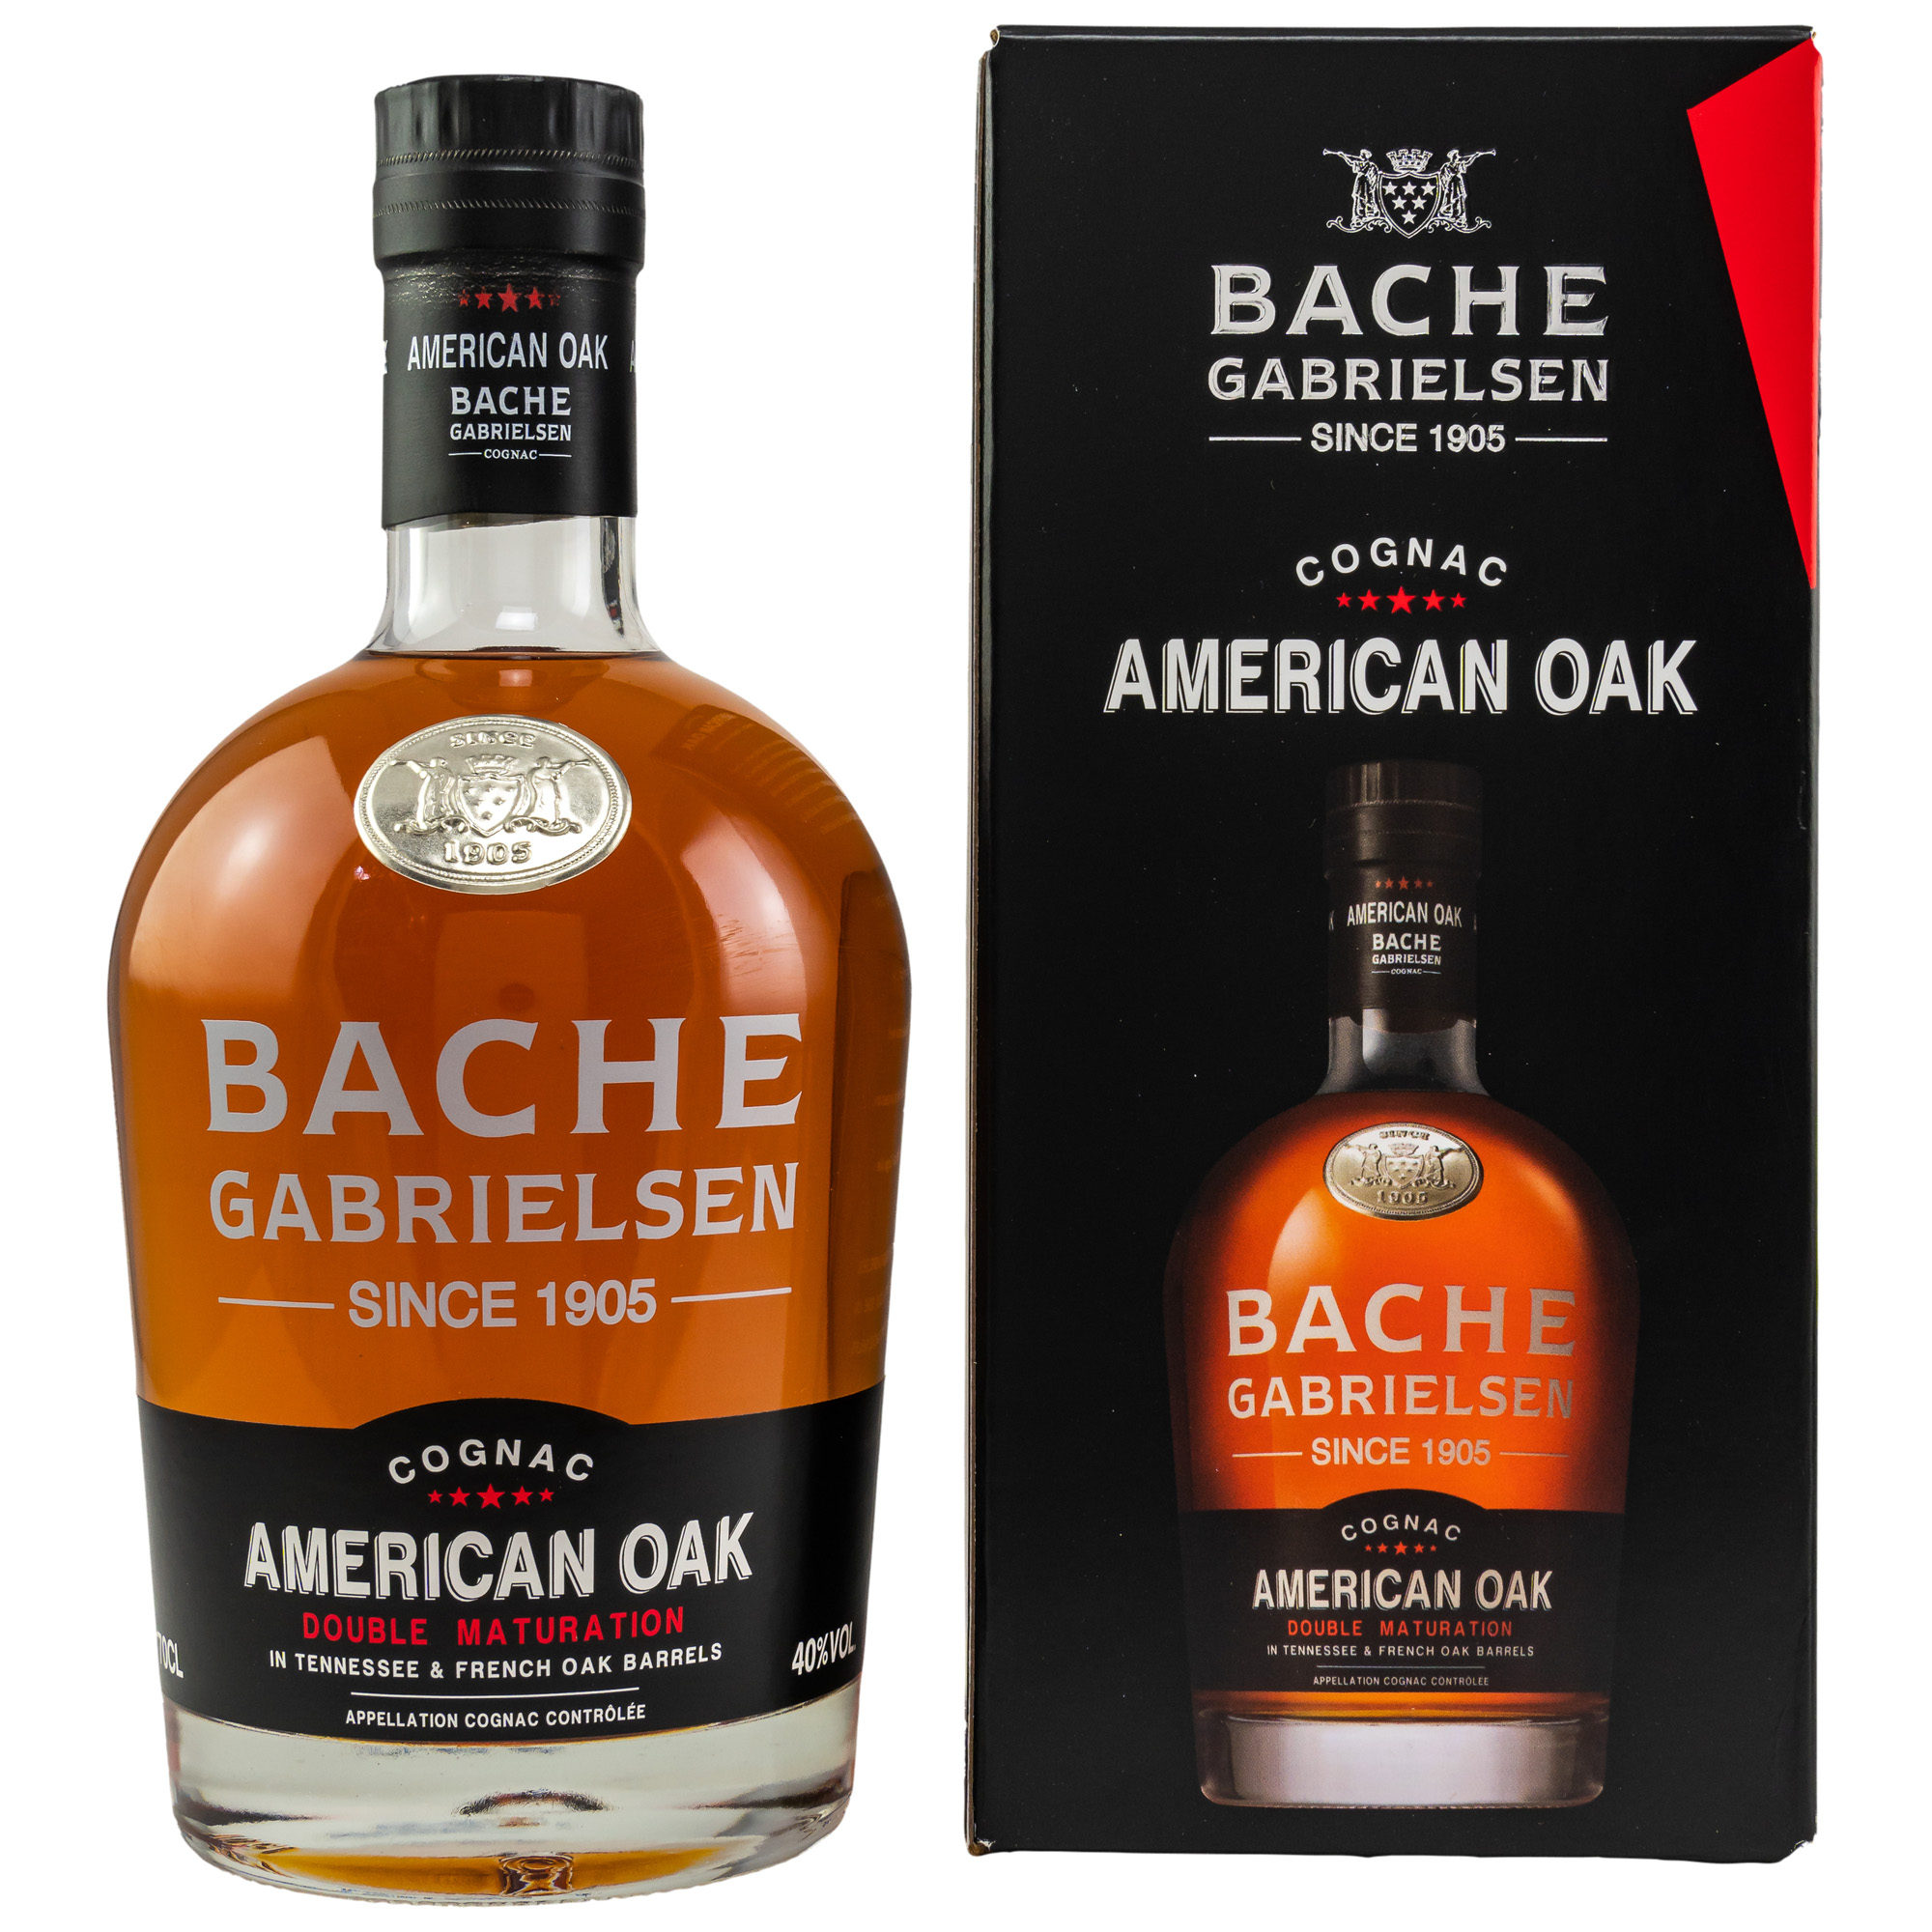 Bache-Gabrielsen American Oak VSOP Cognac 0,7 ltr. 40% Vol. GEPA